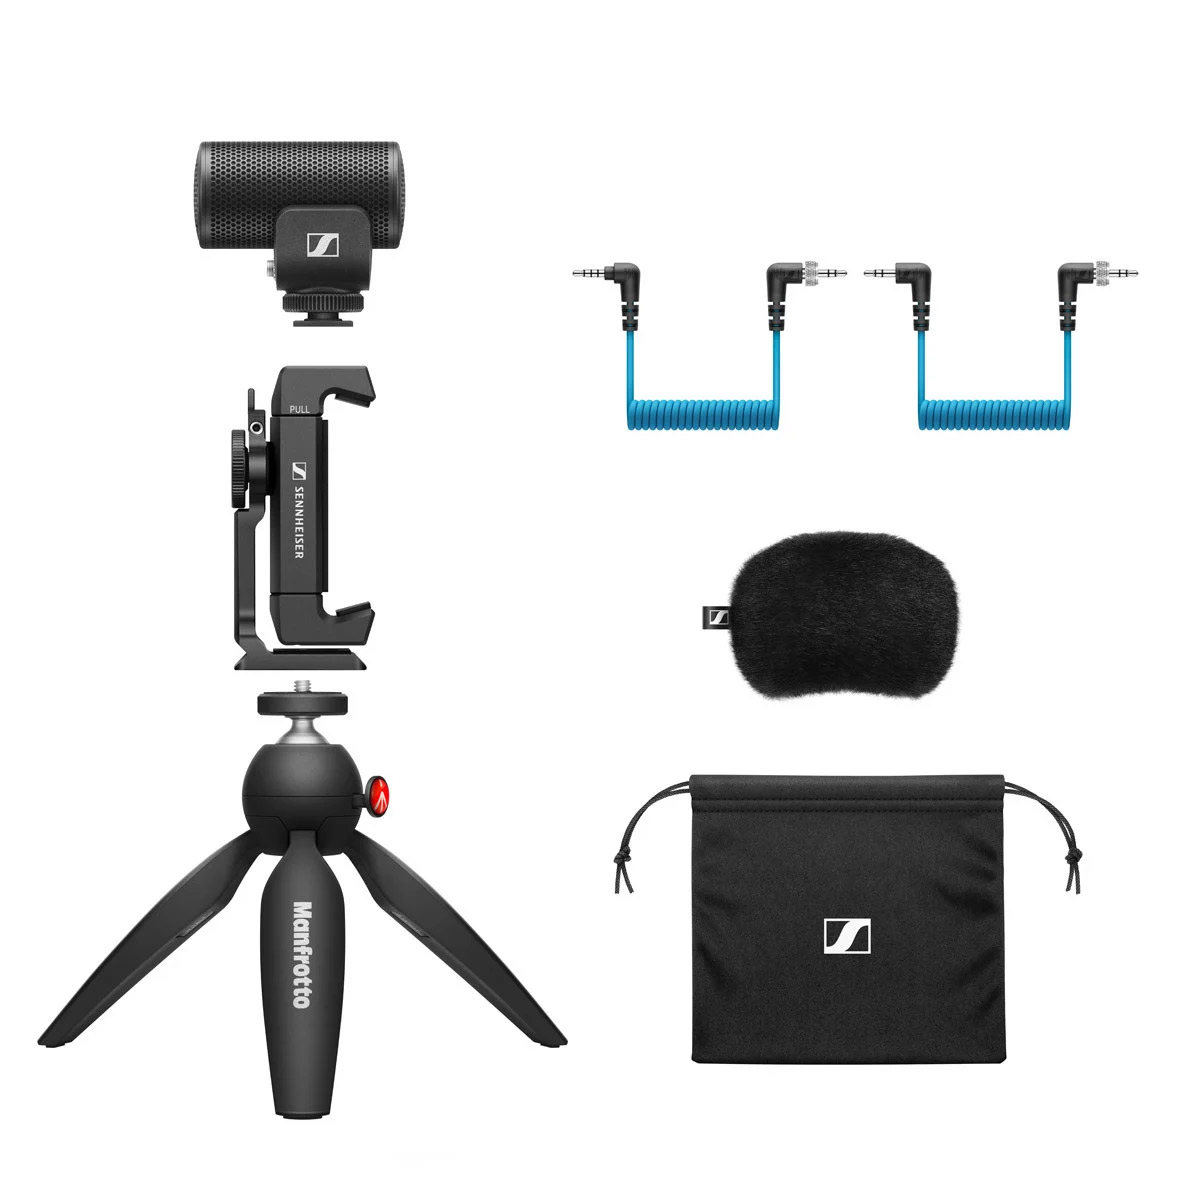 SENNHEISER MKE 200 Mobile Kit 指向性カメラマイク モバイルキット